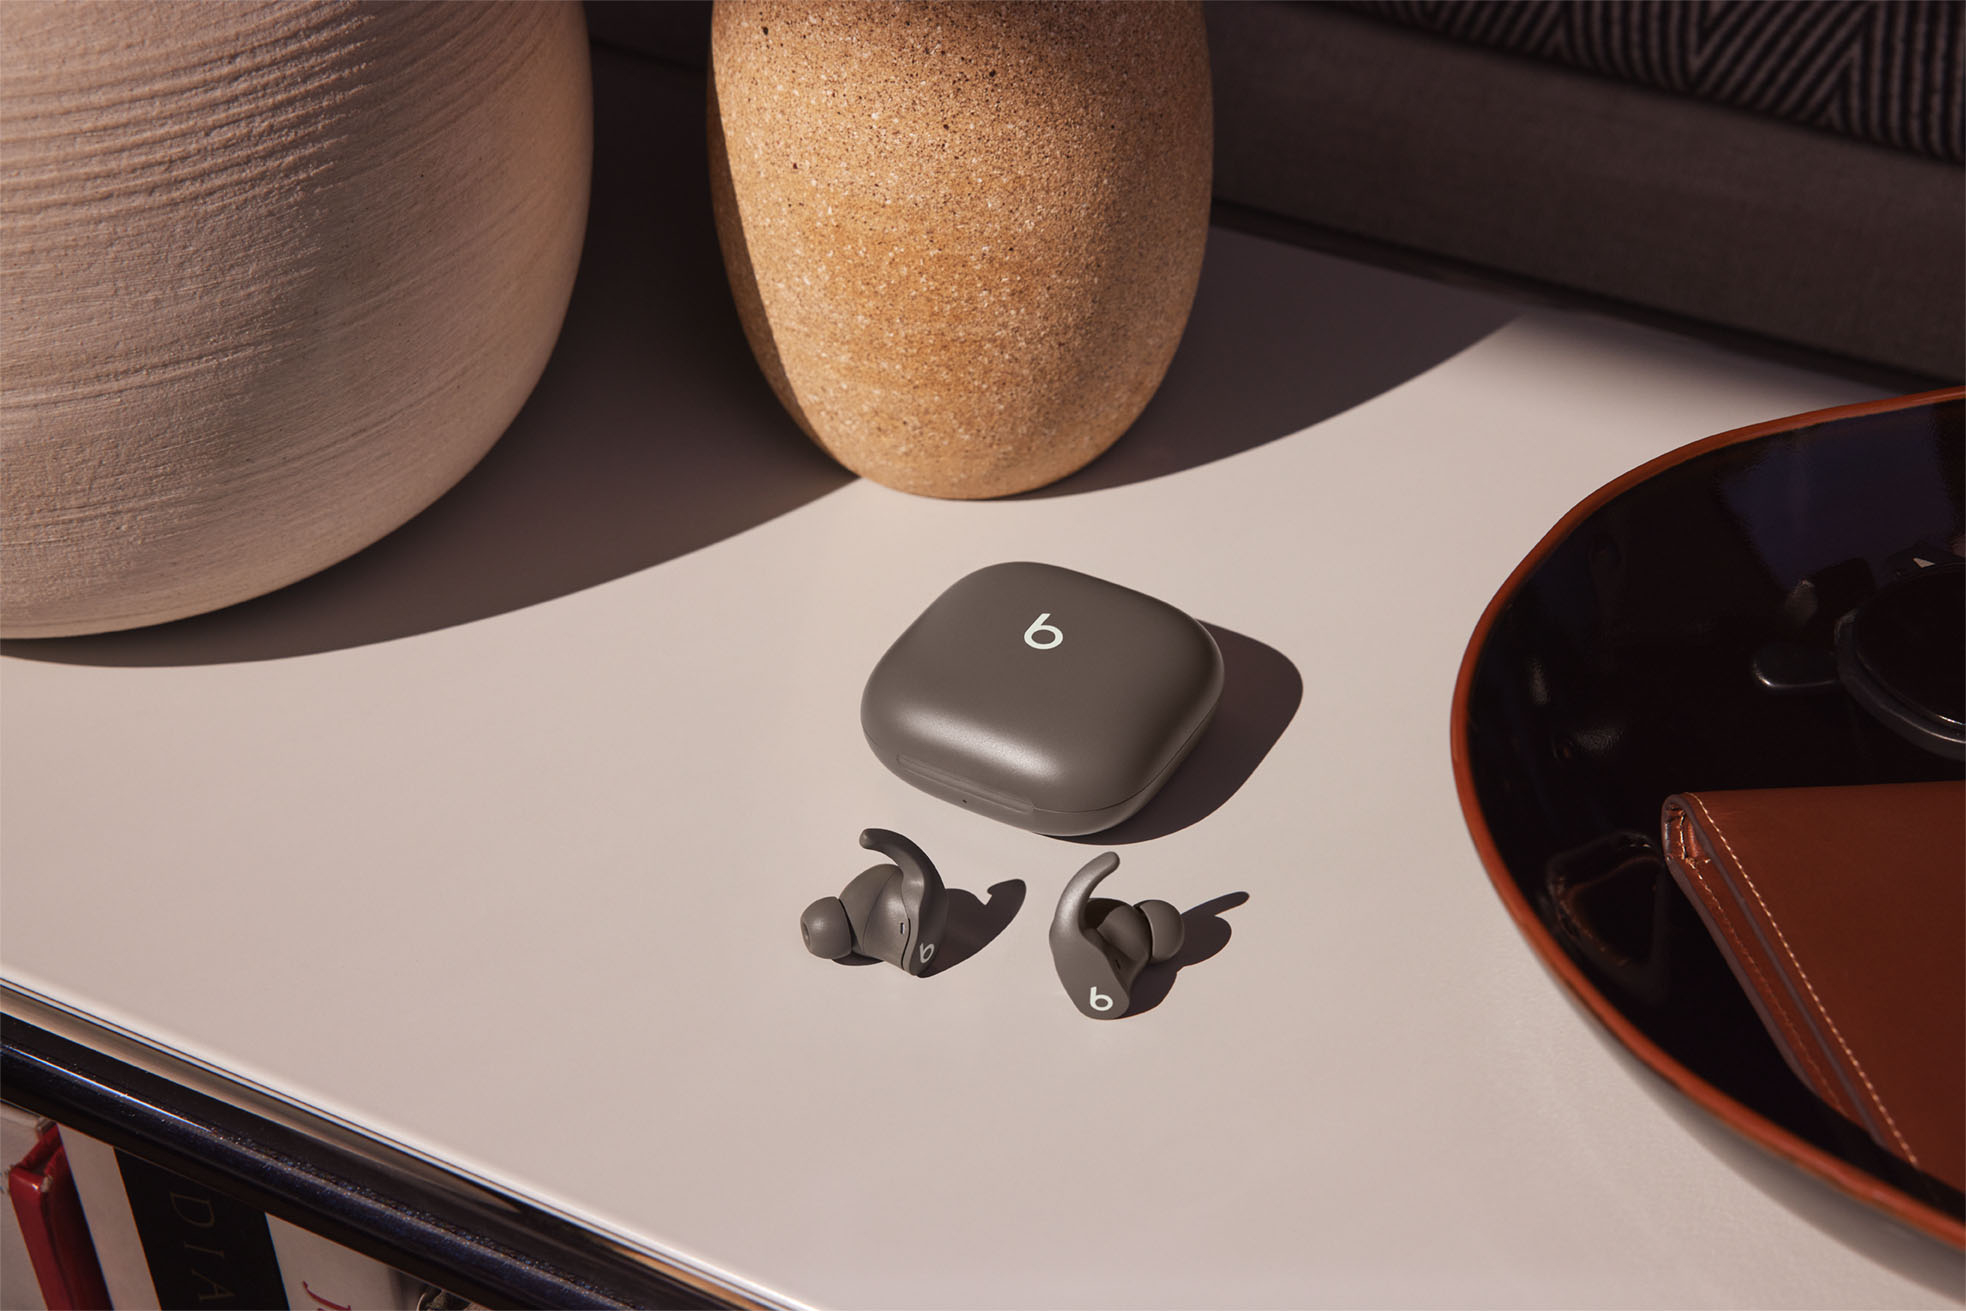 True - Noise Fit Pro Buy Gray MK2J3LL/A Beats Earbuds Best Cancelling Sage In-Ear Wireless